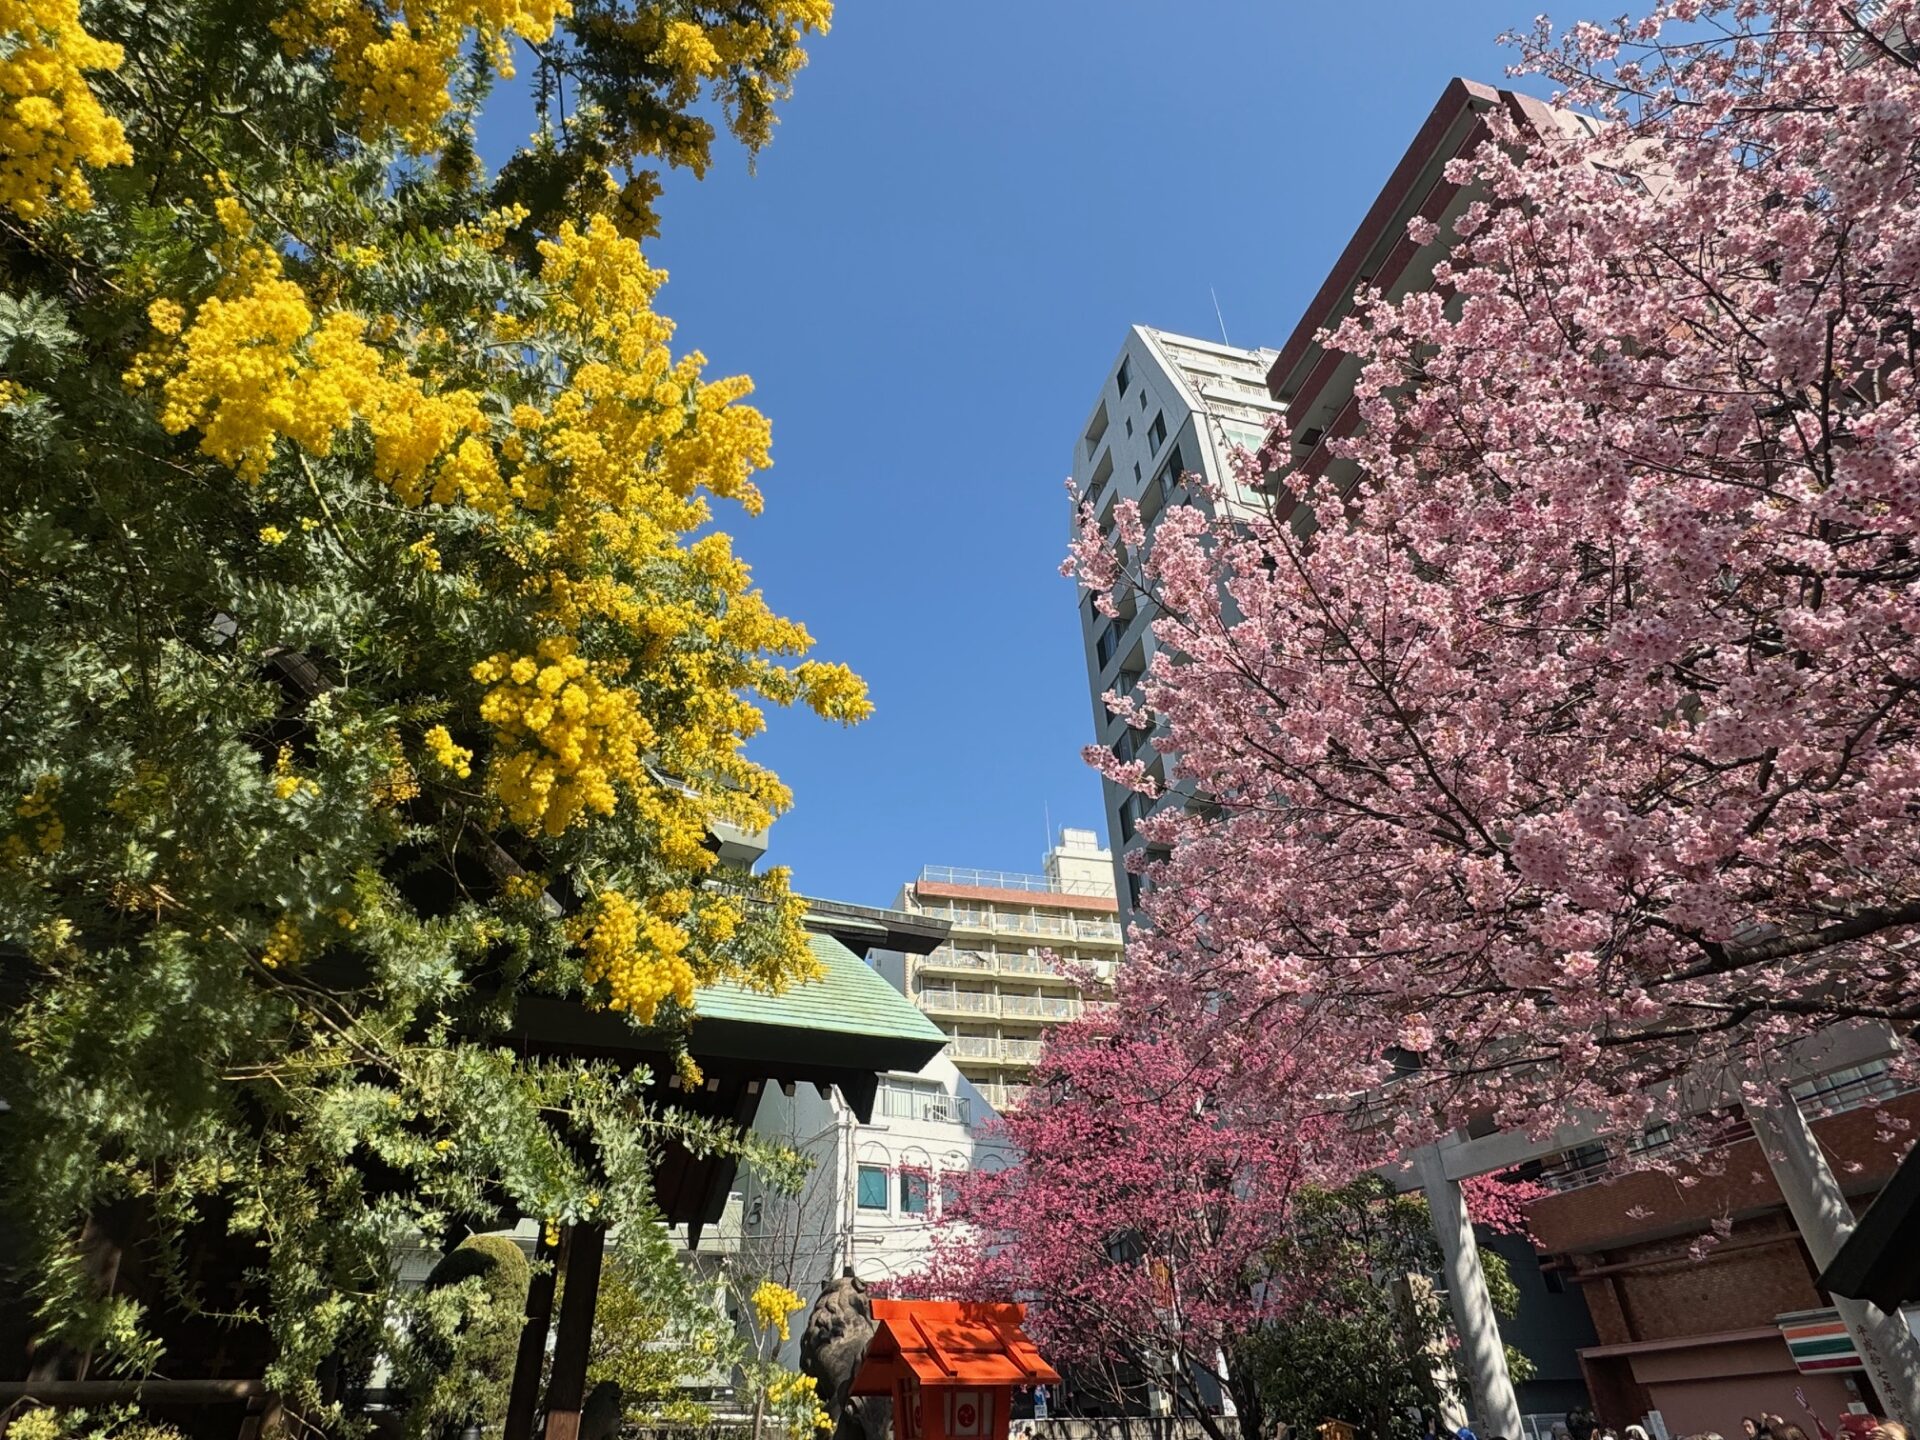 神社の境内よこから、くもひとつない青空を背景に、左にミモザ、右に桜を写した写真。ブルー、イエロー、ピンクのコントラストがきれいです